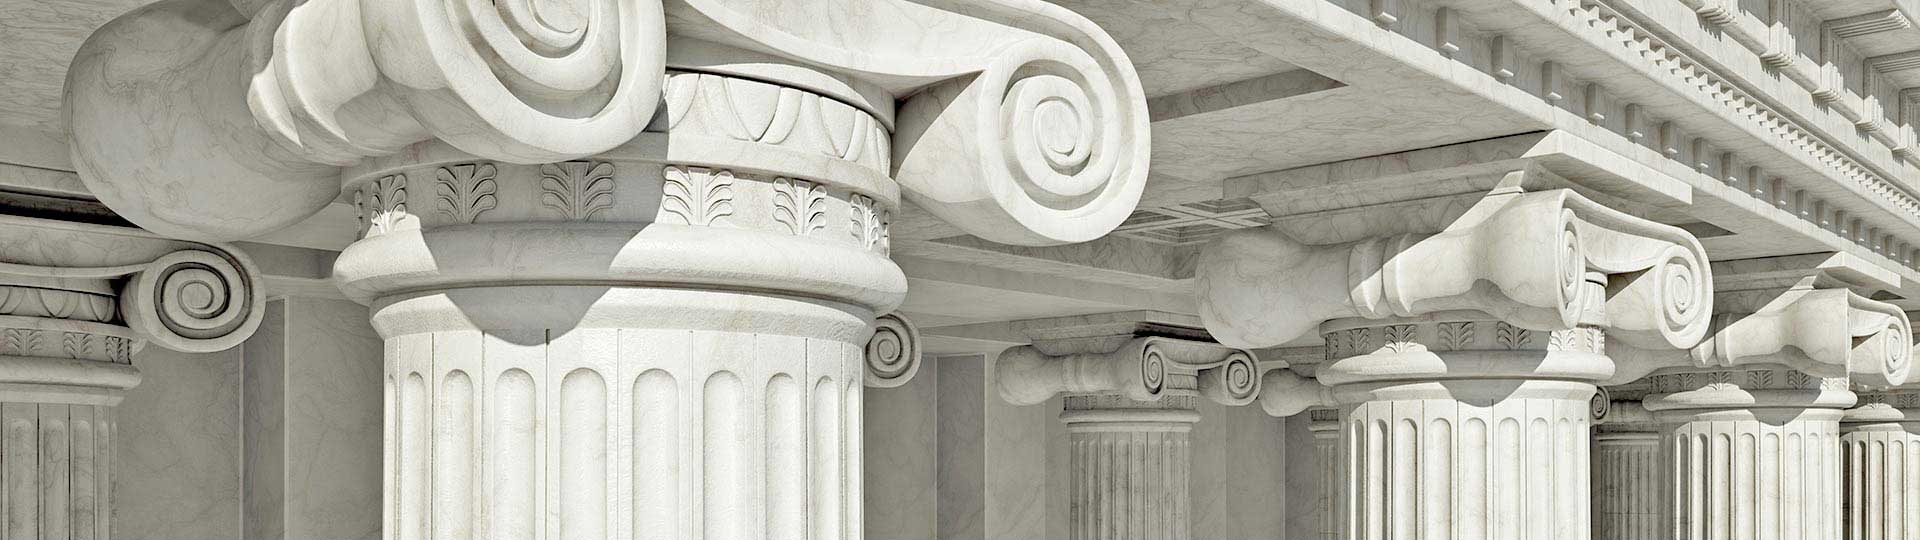 Home pillars